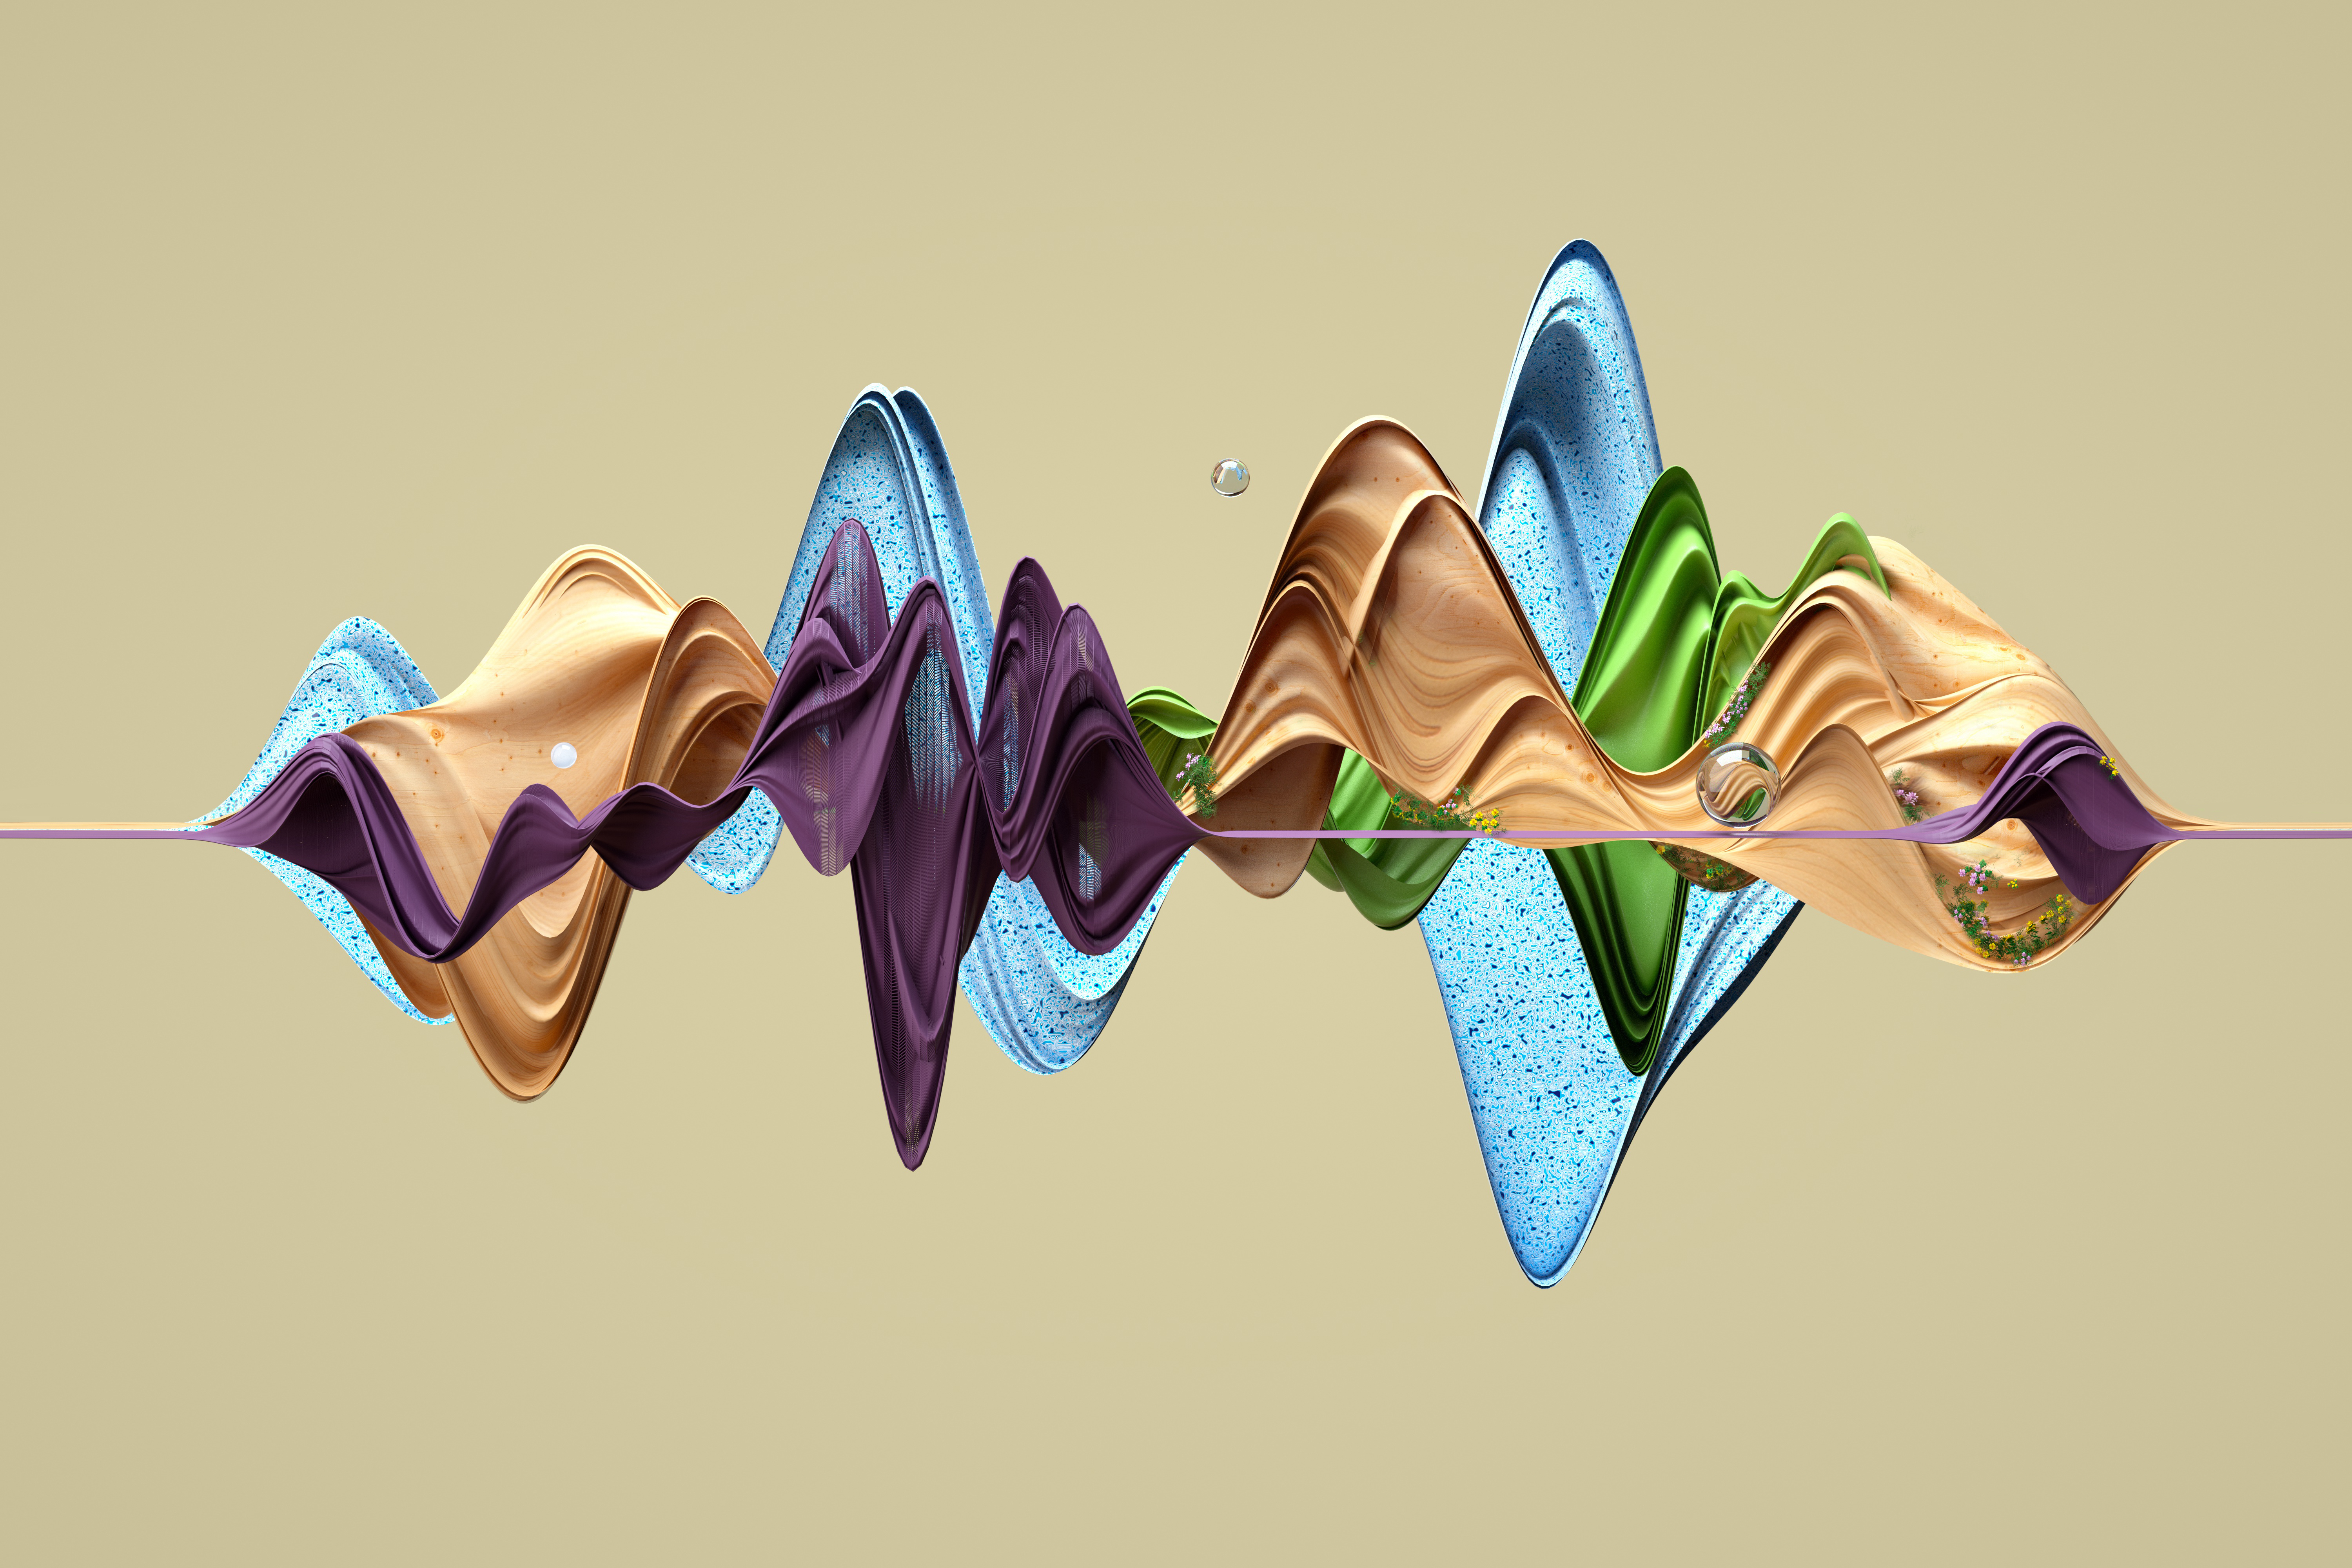 Imatge generada digitalment d'un gràfic abstracte de corbes multicolors sobre fons gris per representar les ones sonores.